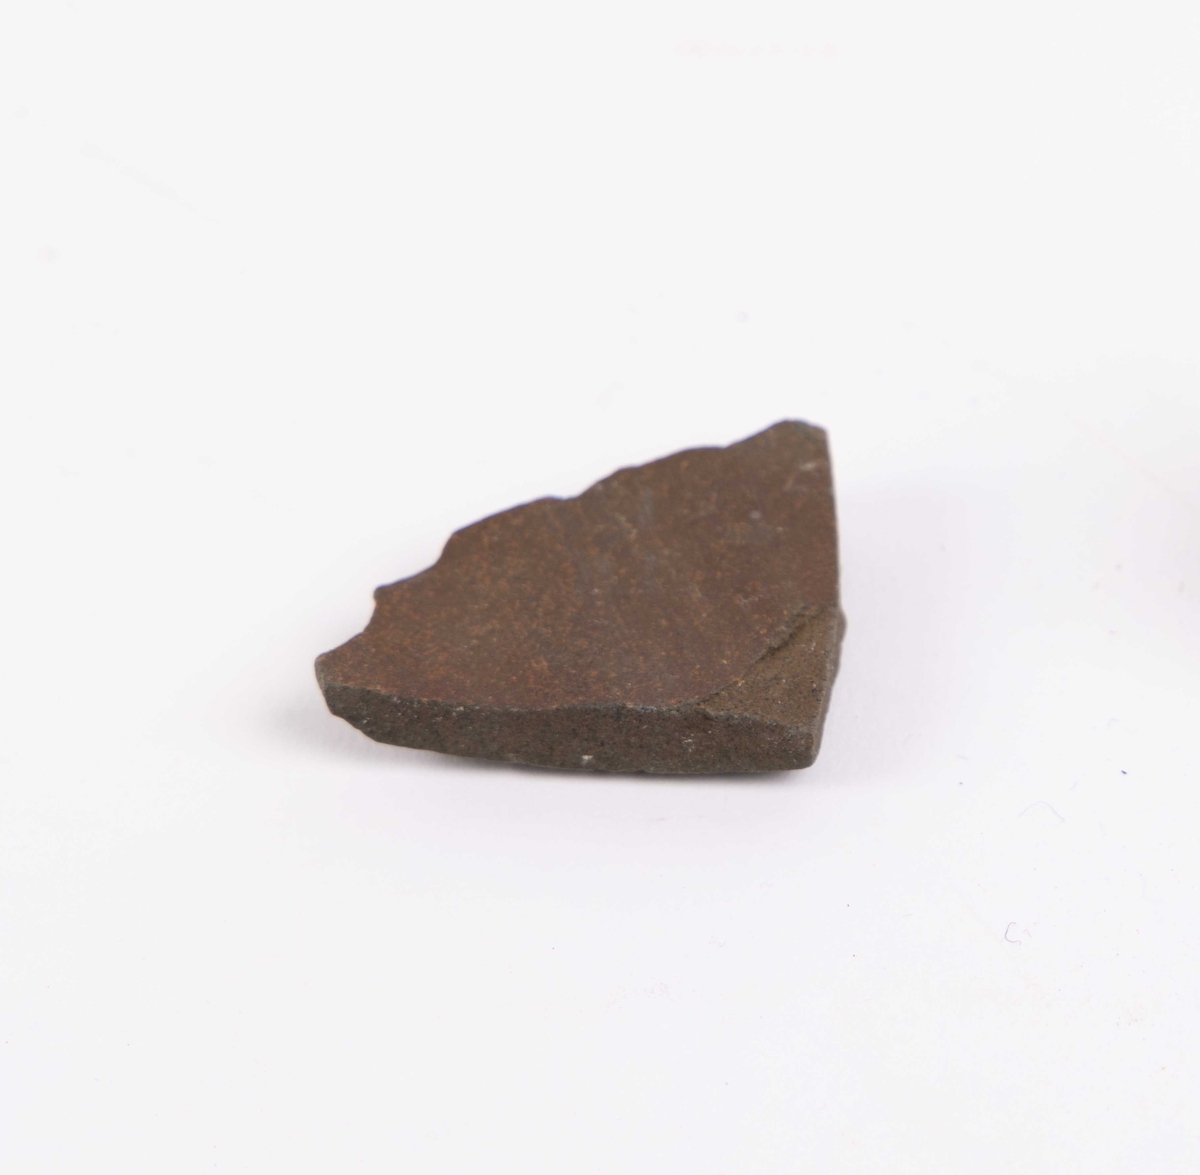 Keramikkskår funnet ved Langevåg, Sula